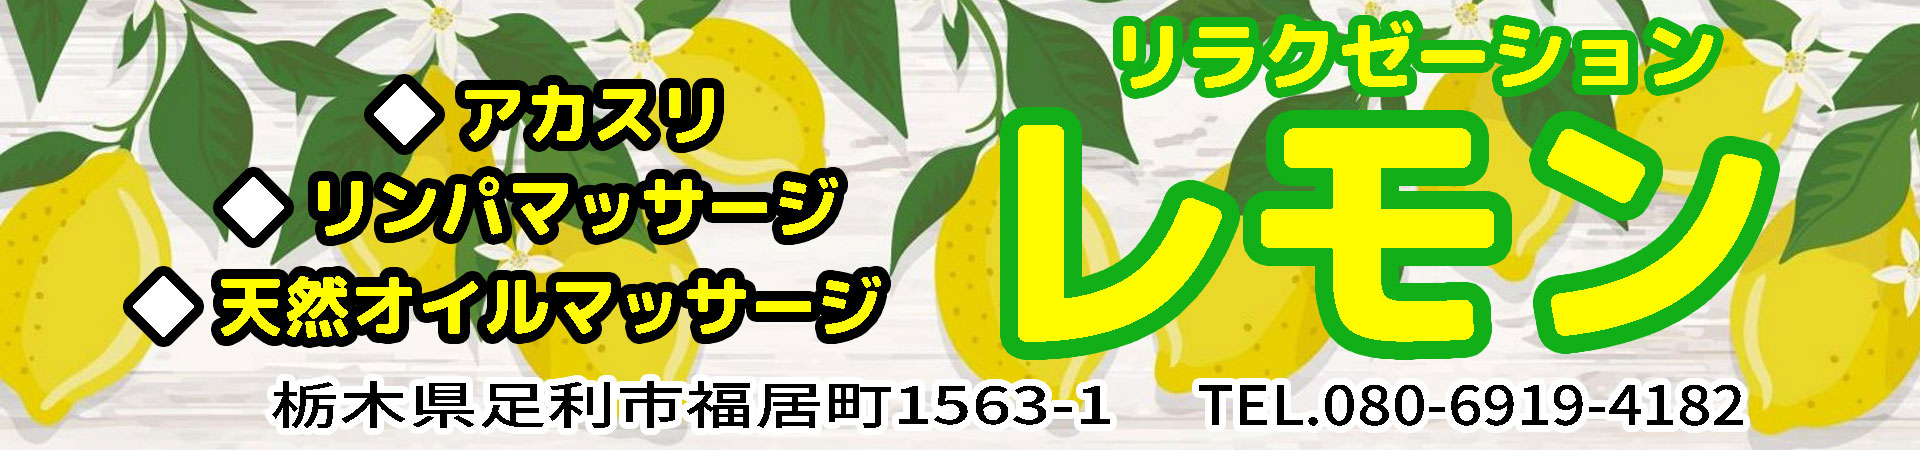 【レモン】足利/栃木